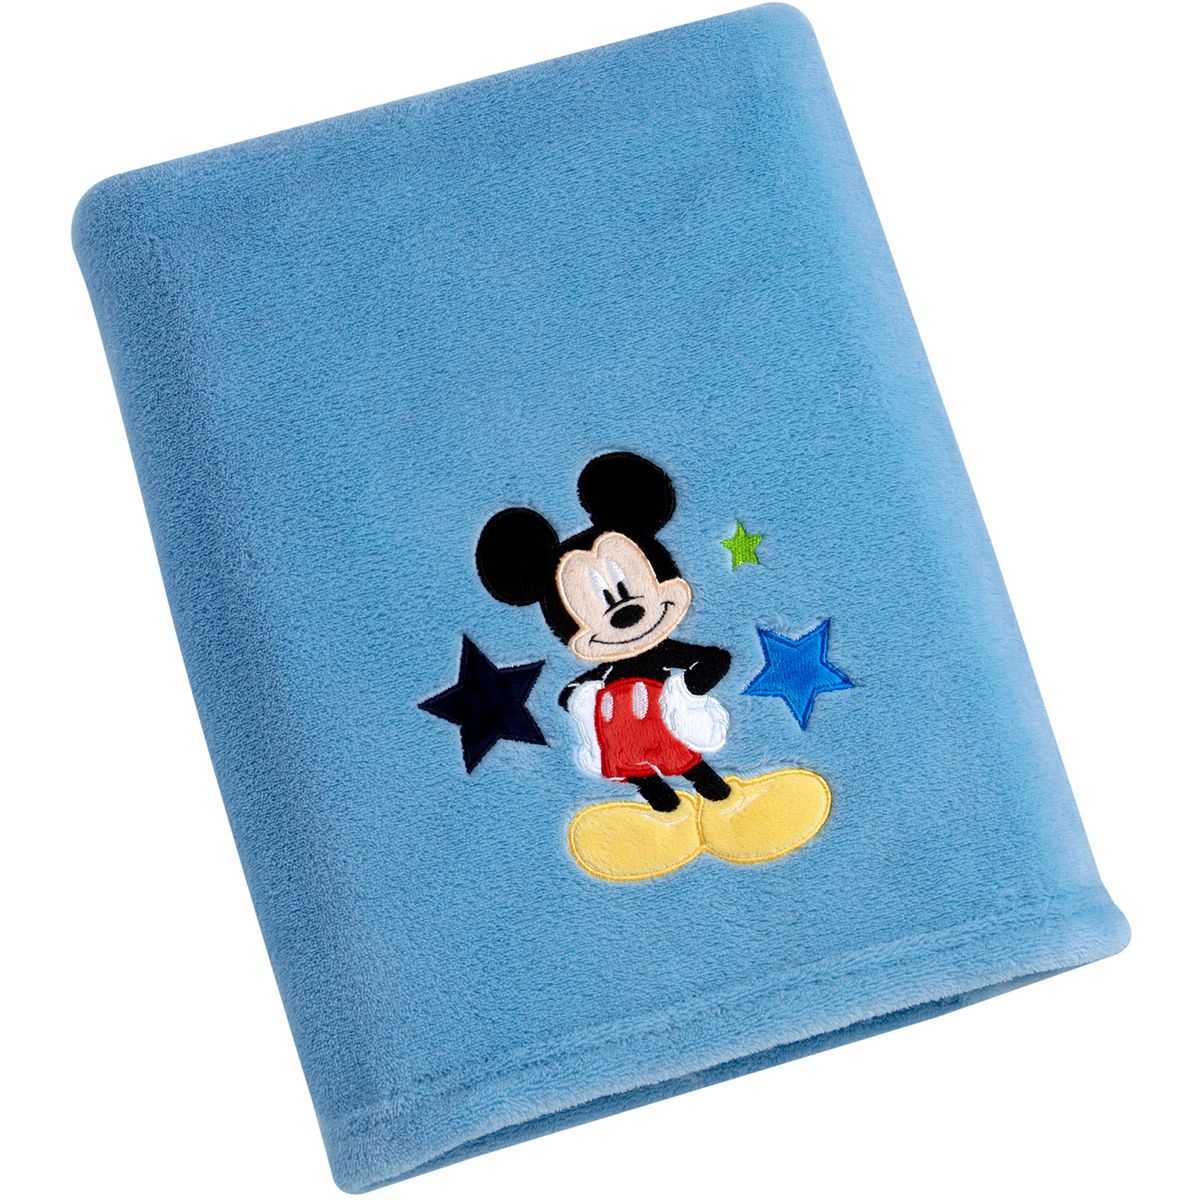 [送料無料] Disney キャラクターベビーブランケット、ミッキーマウス[楽天海外通販] | Disney Character Baby Blanket, Mickey Mouse